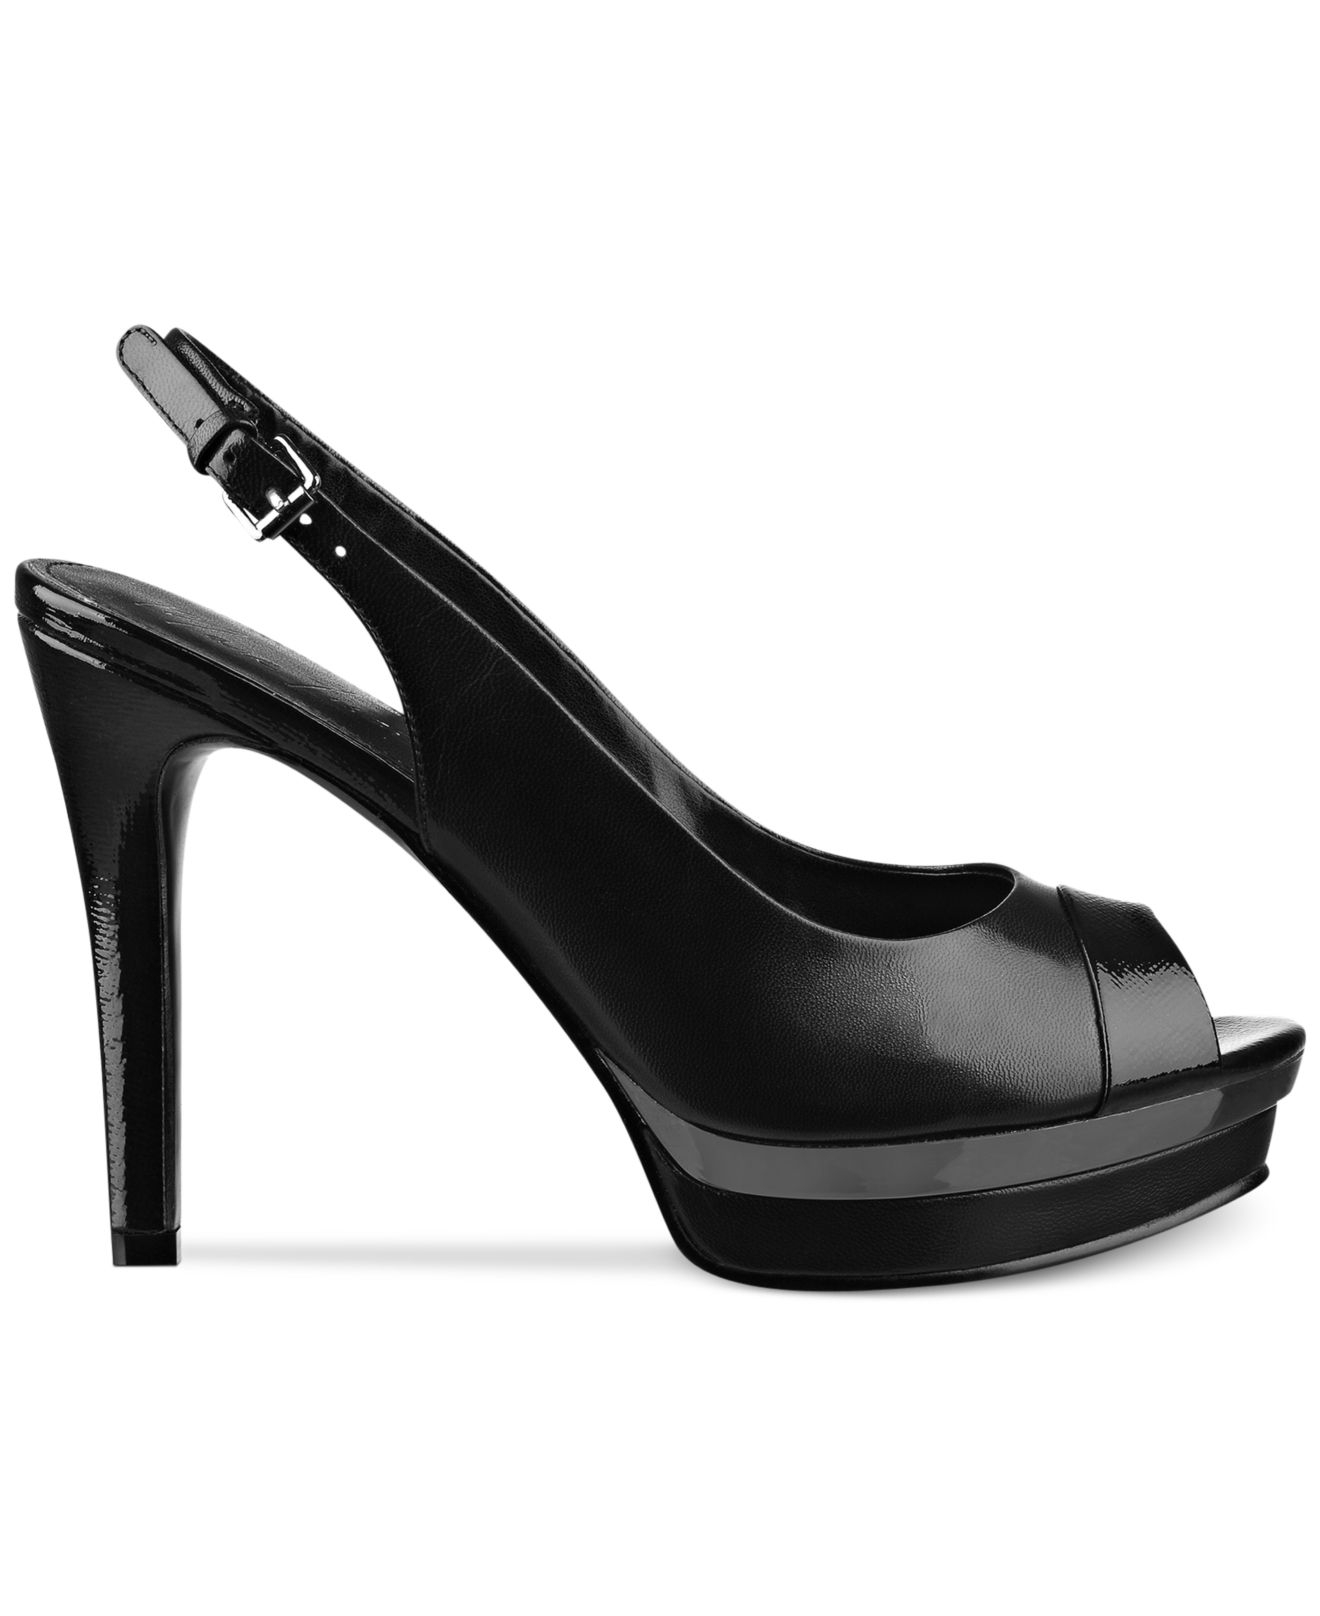 marc fisher black heels